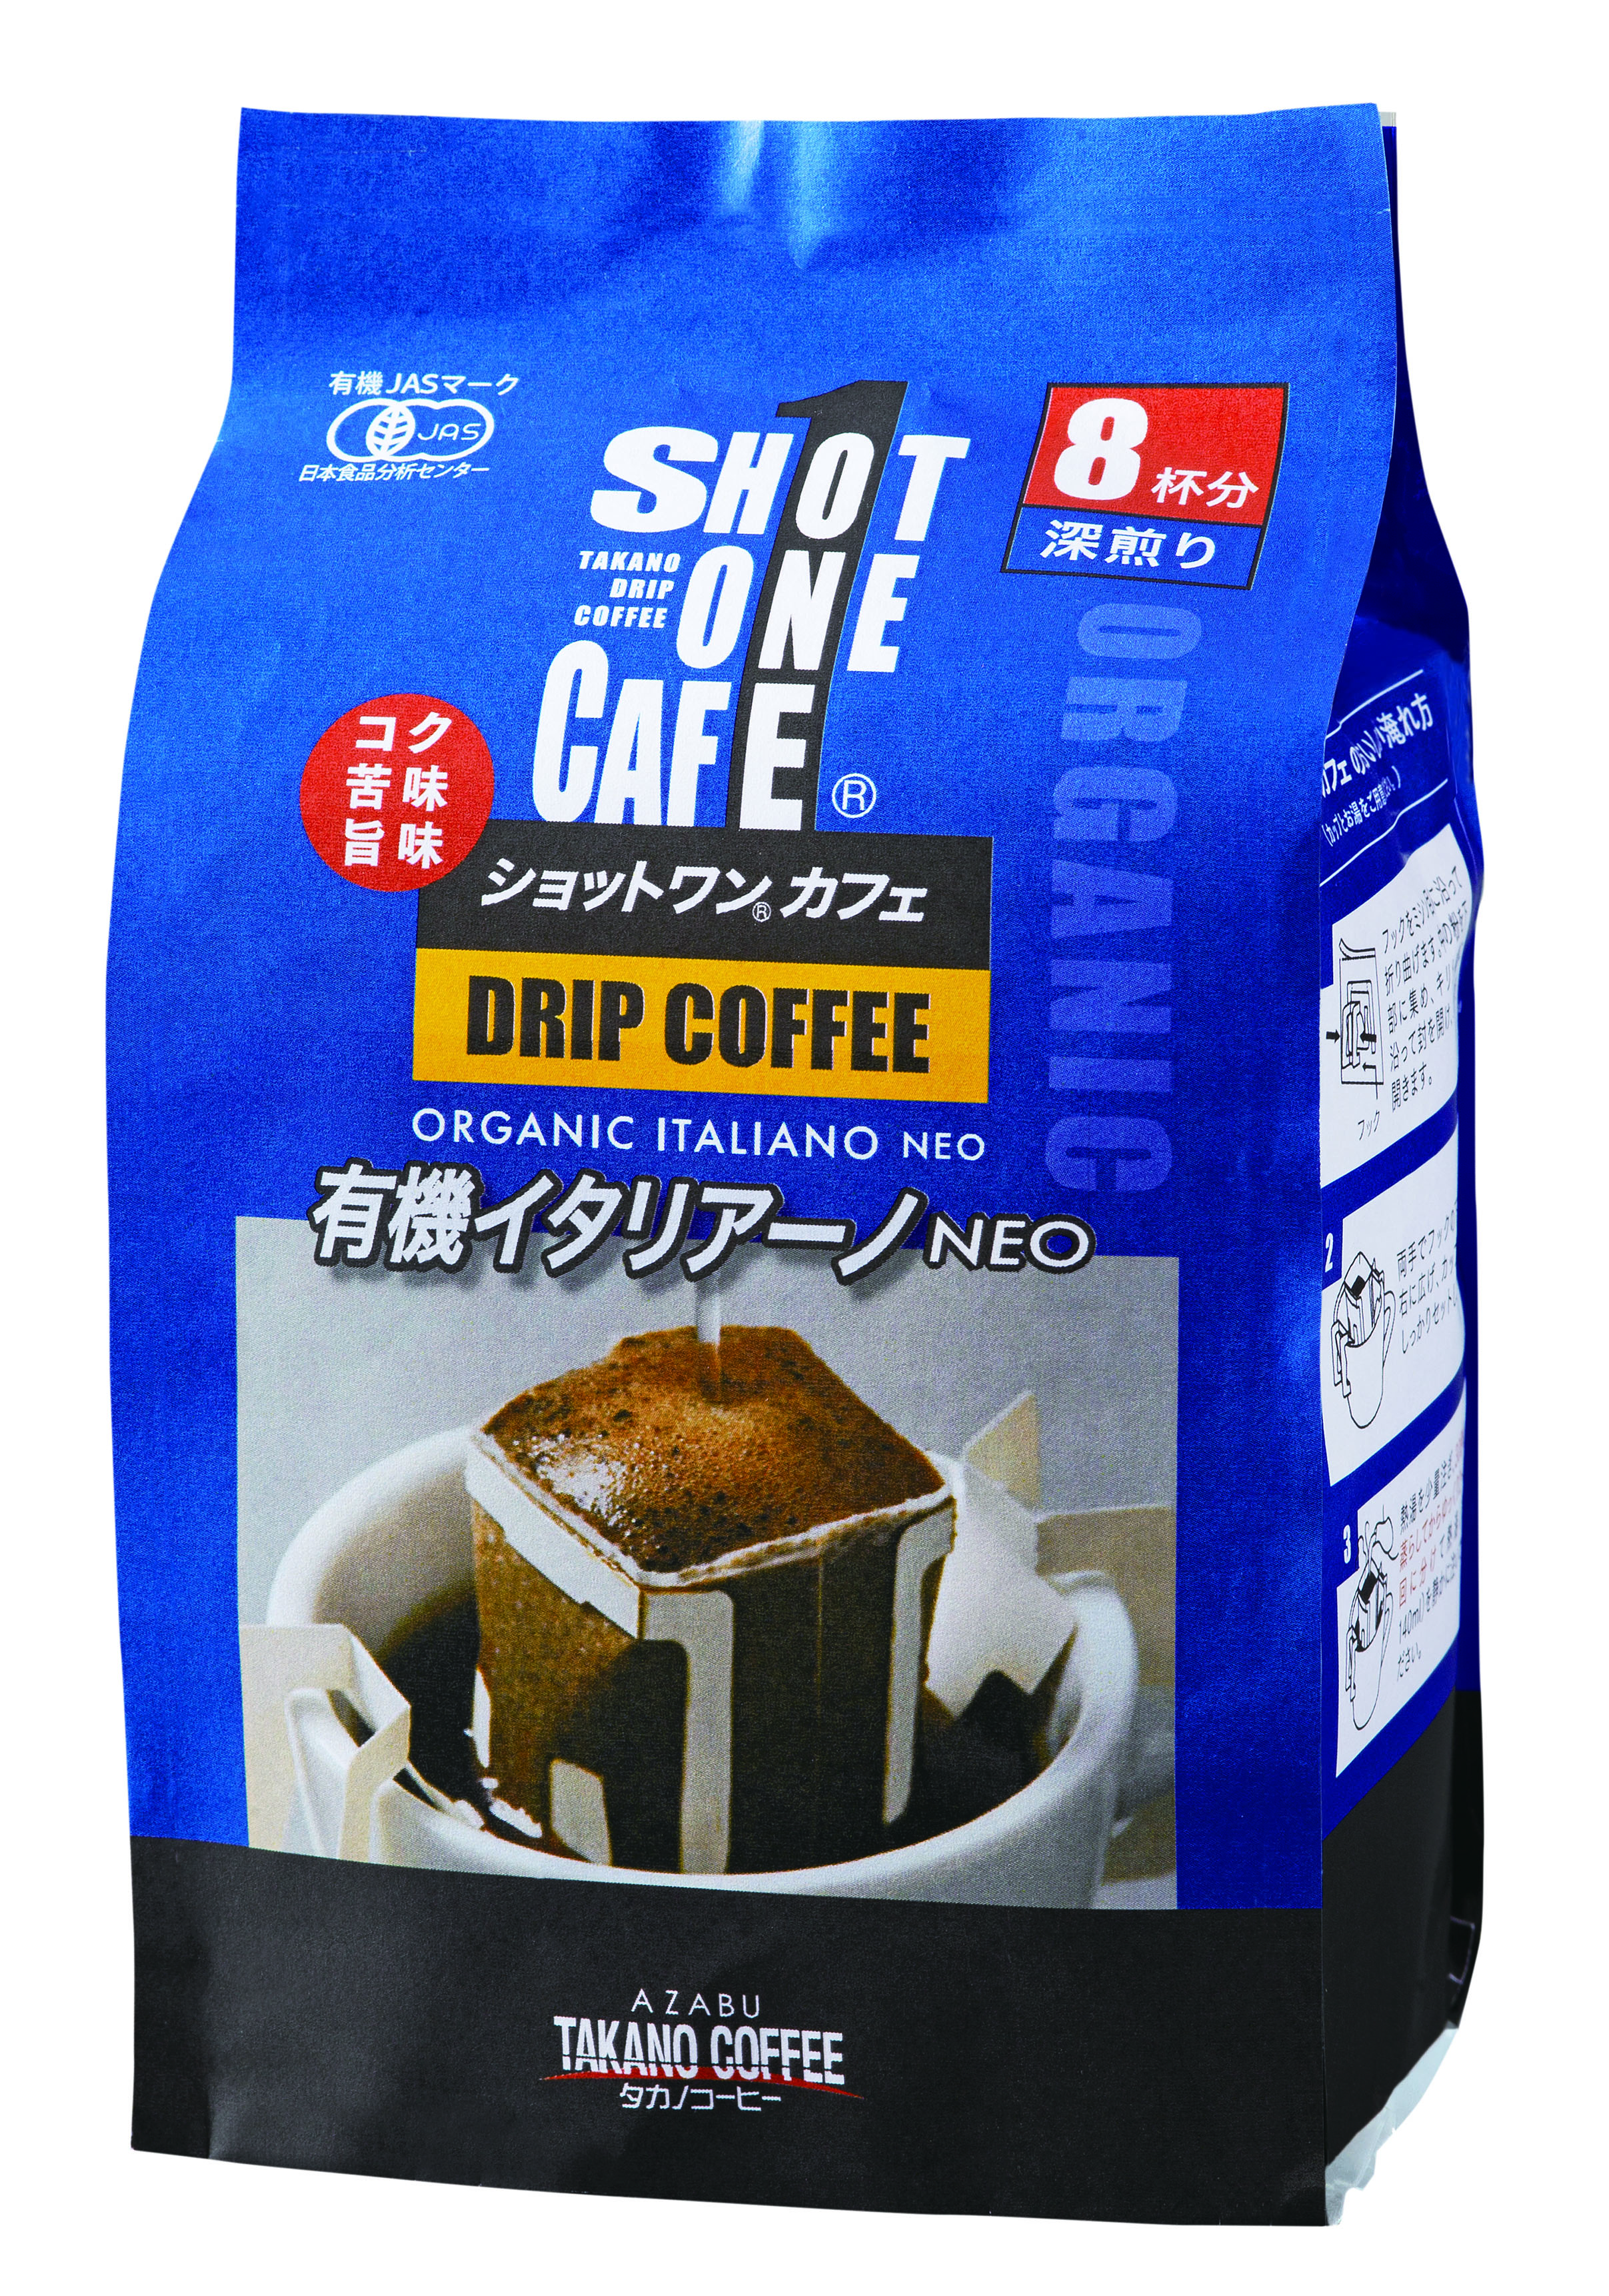 ショットワンカフェ 有機イタリアーノ/10杯分(深煎り)【タカノコーヒー】1